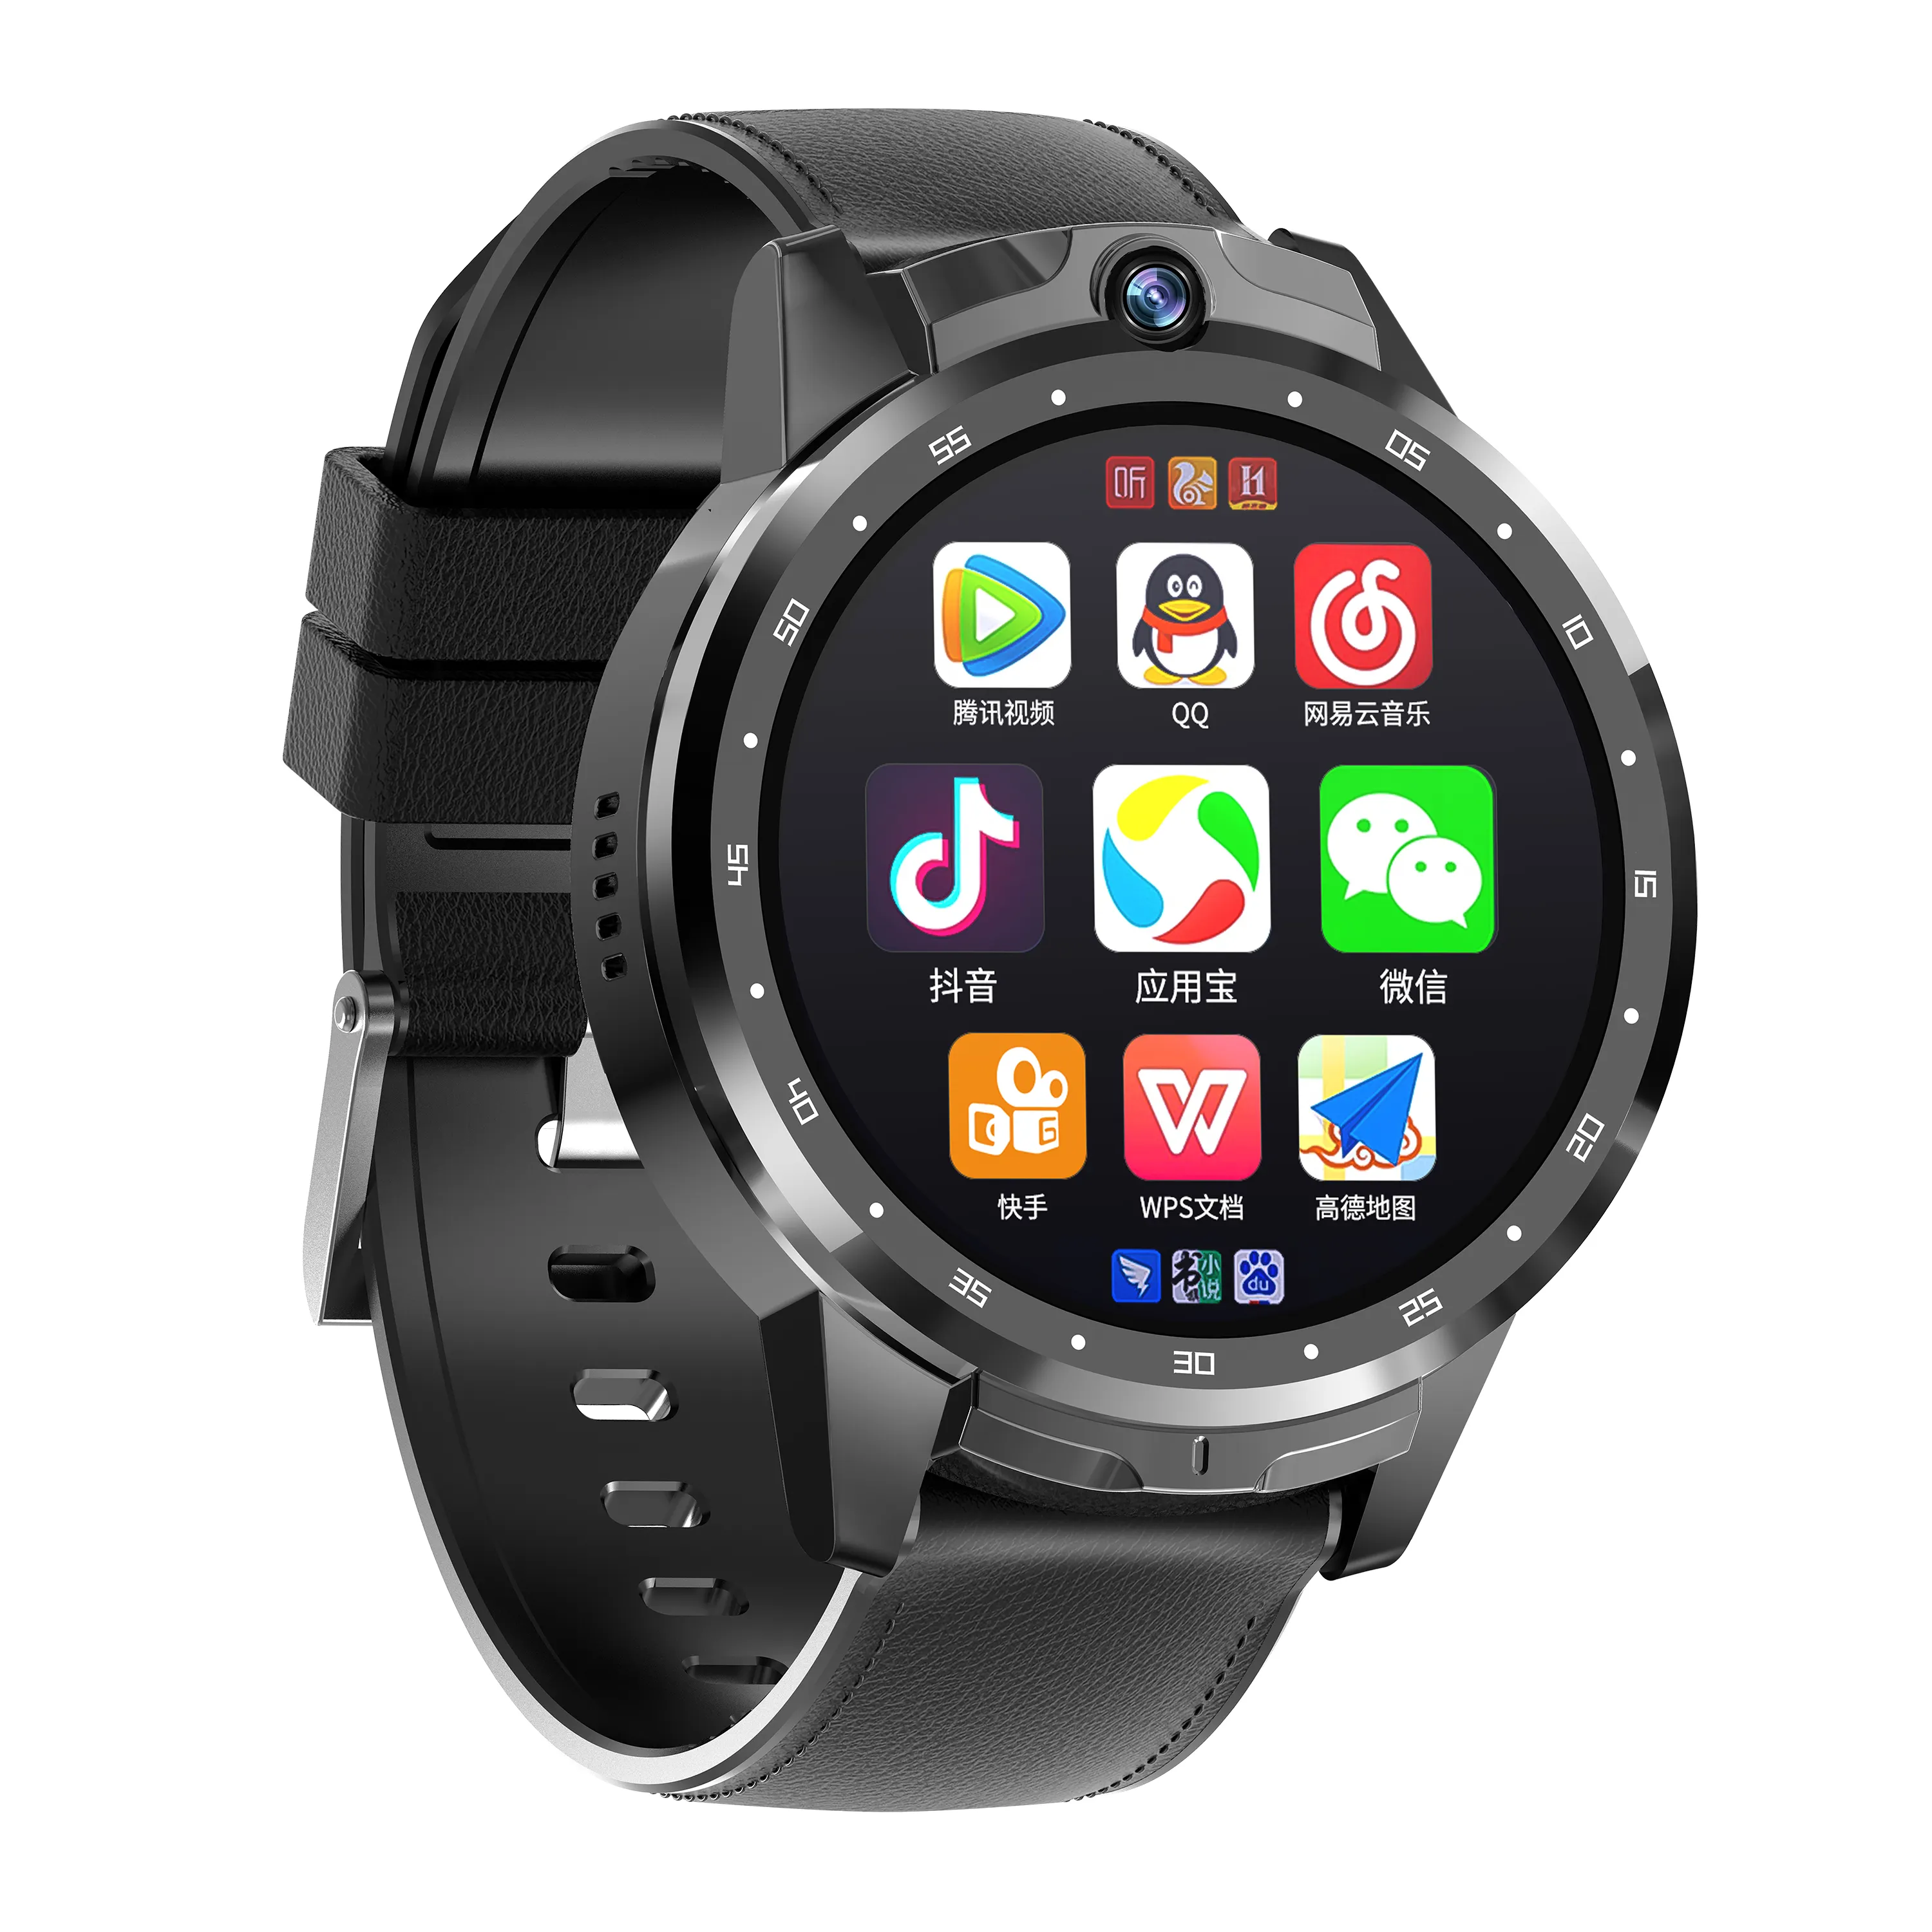 4G 스마트 시계 안드로이드 GPS 와이파이 4G 스마트 시계 전화 5MP 카메라 LTE SIM 카드 슬롯 안드로이드 8.1 듀얼 카메라 1.6 인치 화면